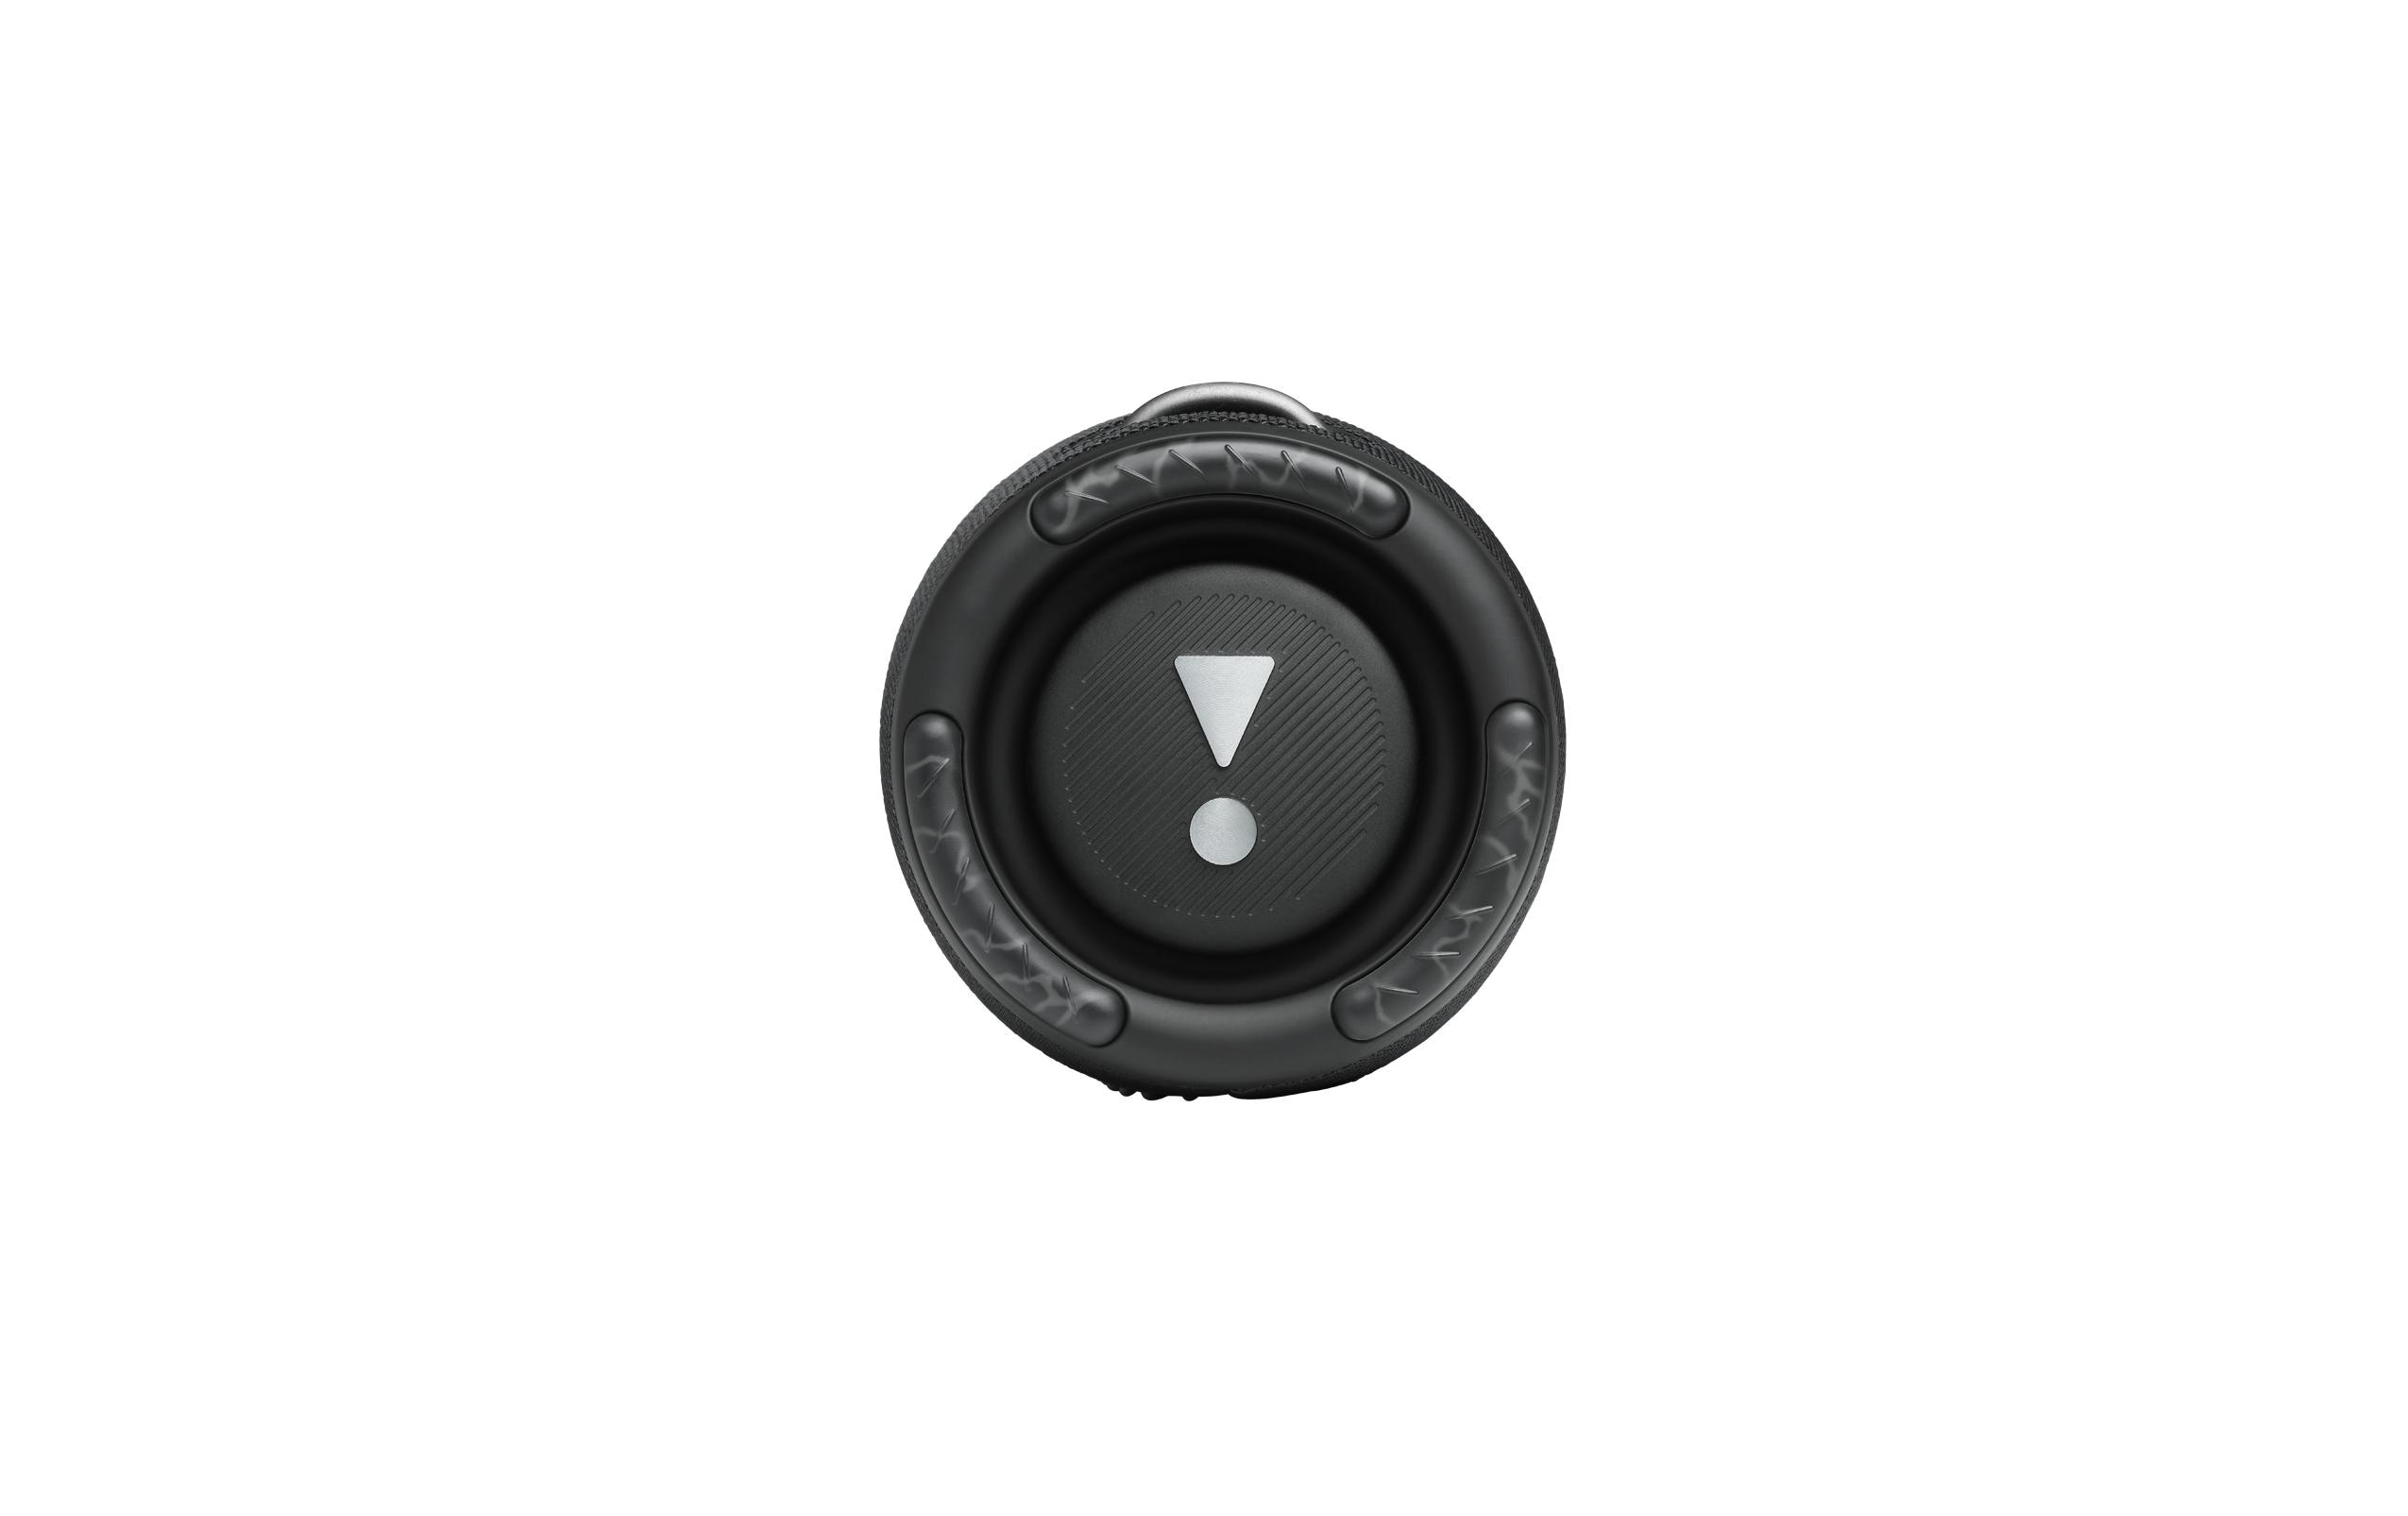 JBL Bluetooth Speaker Xtreme 3 Schwarz